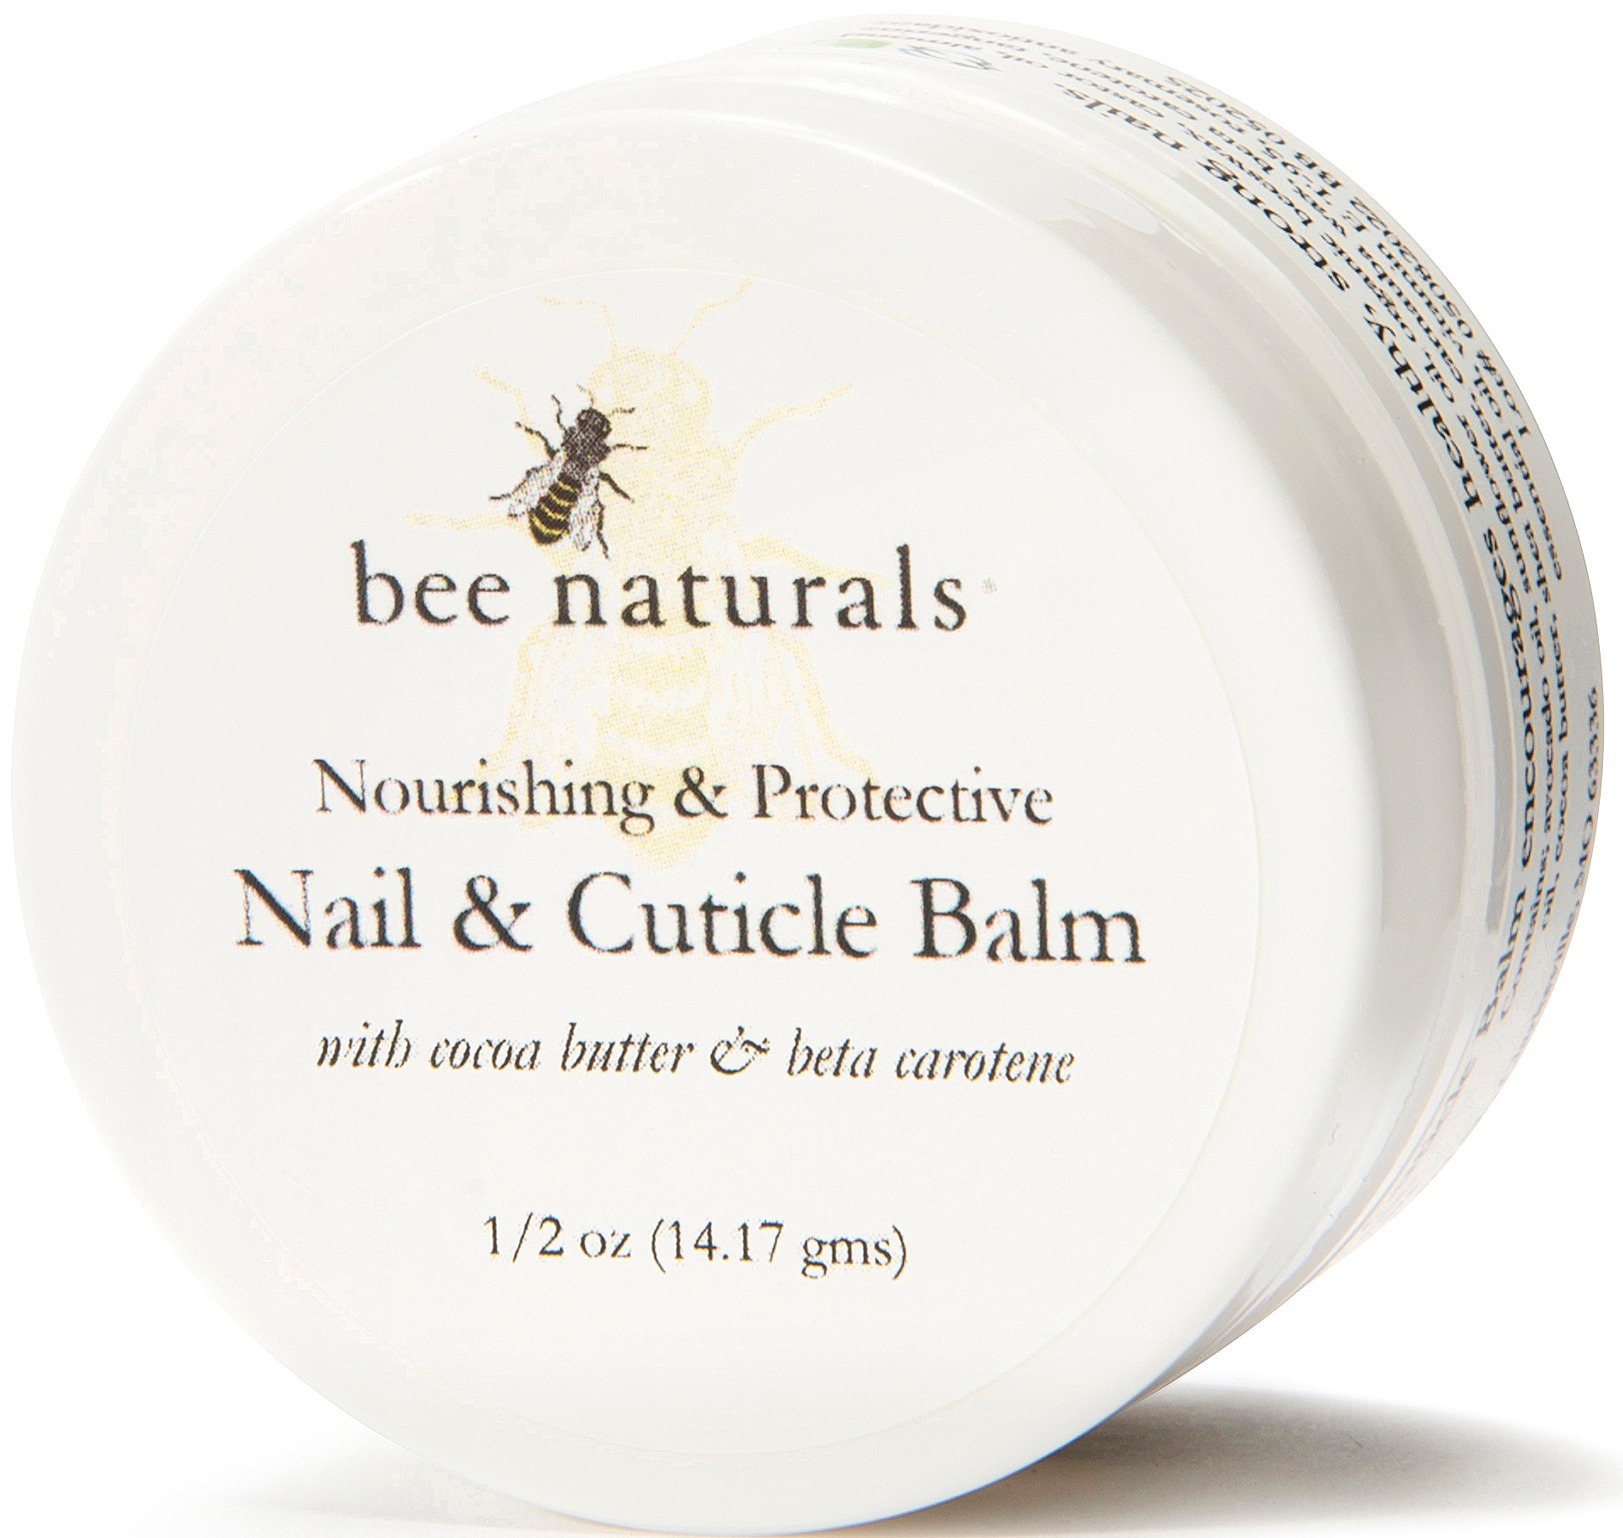 Bee Naturals Nail & Cuticle Balm